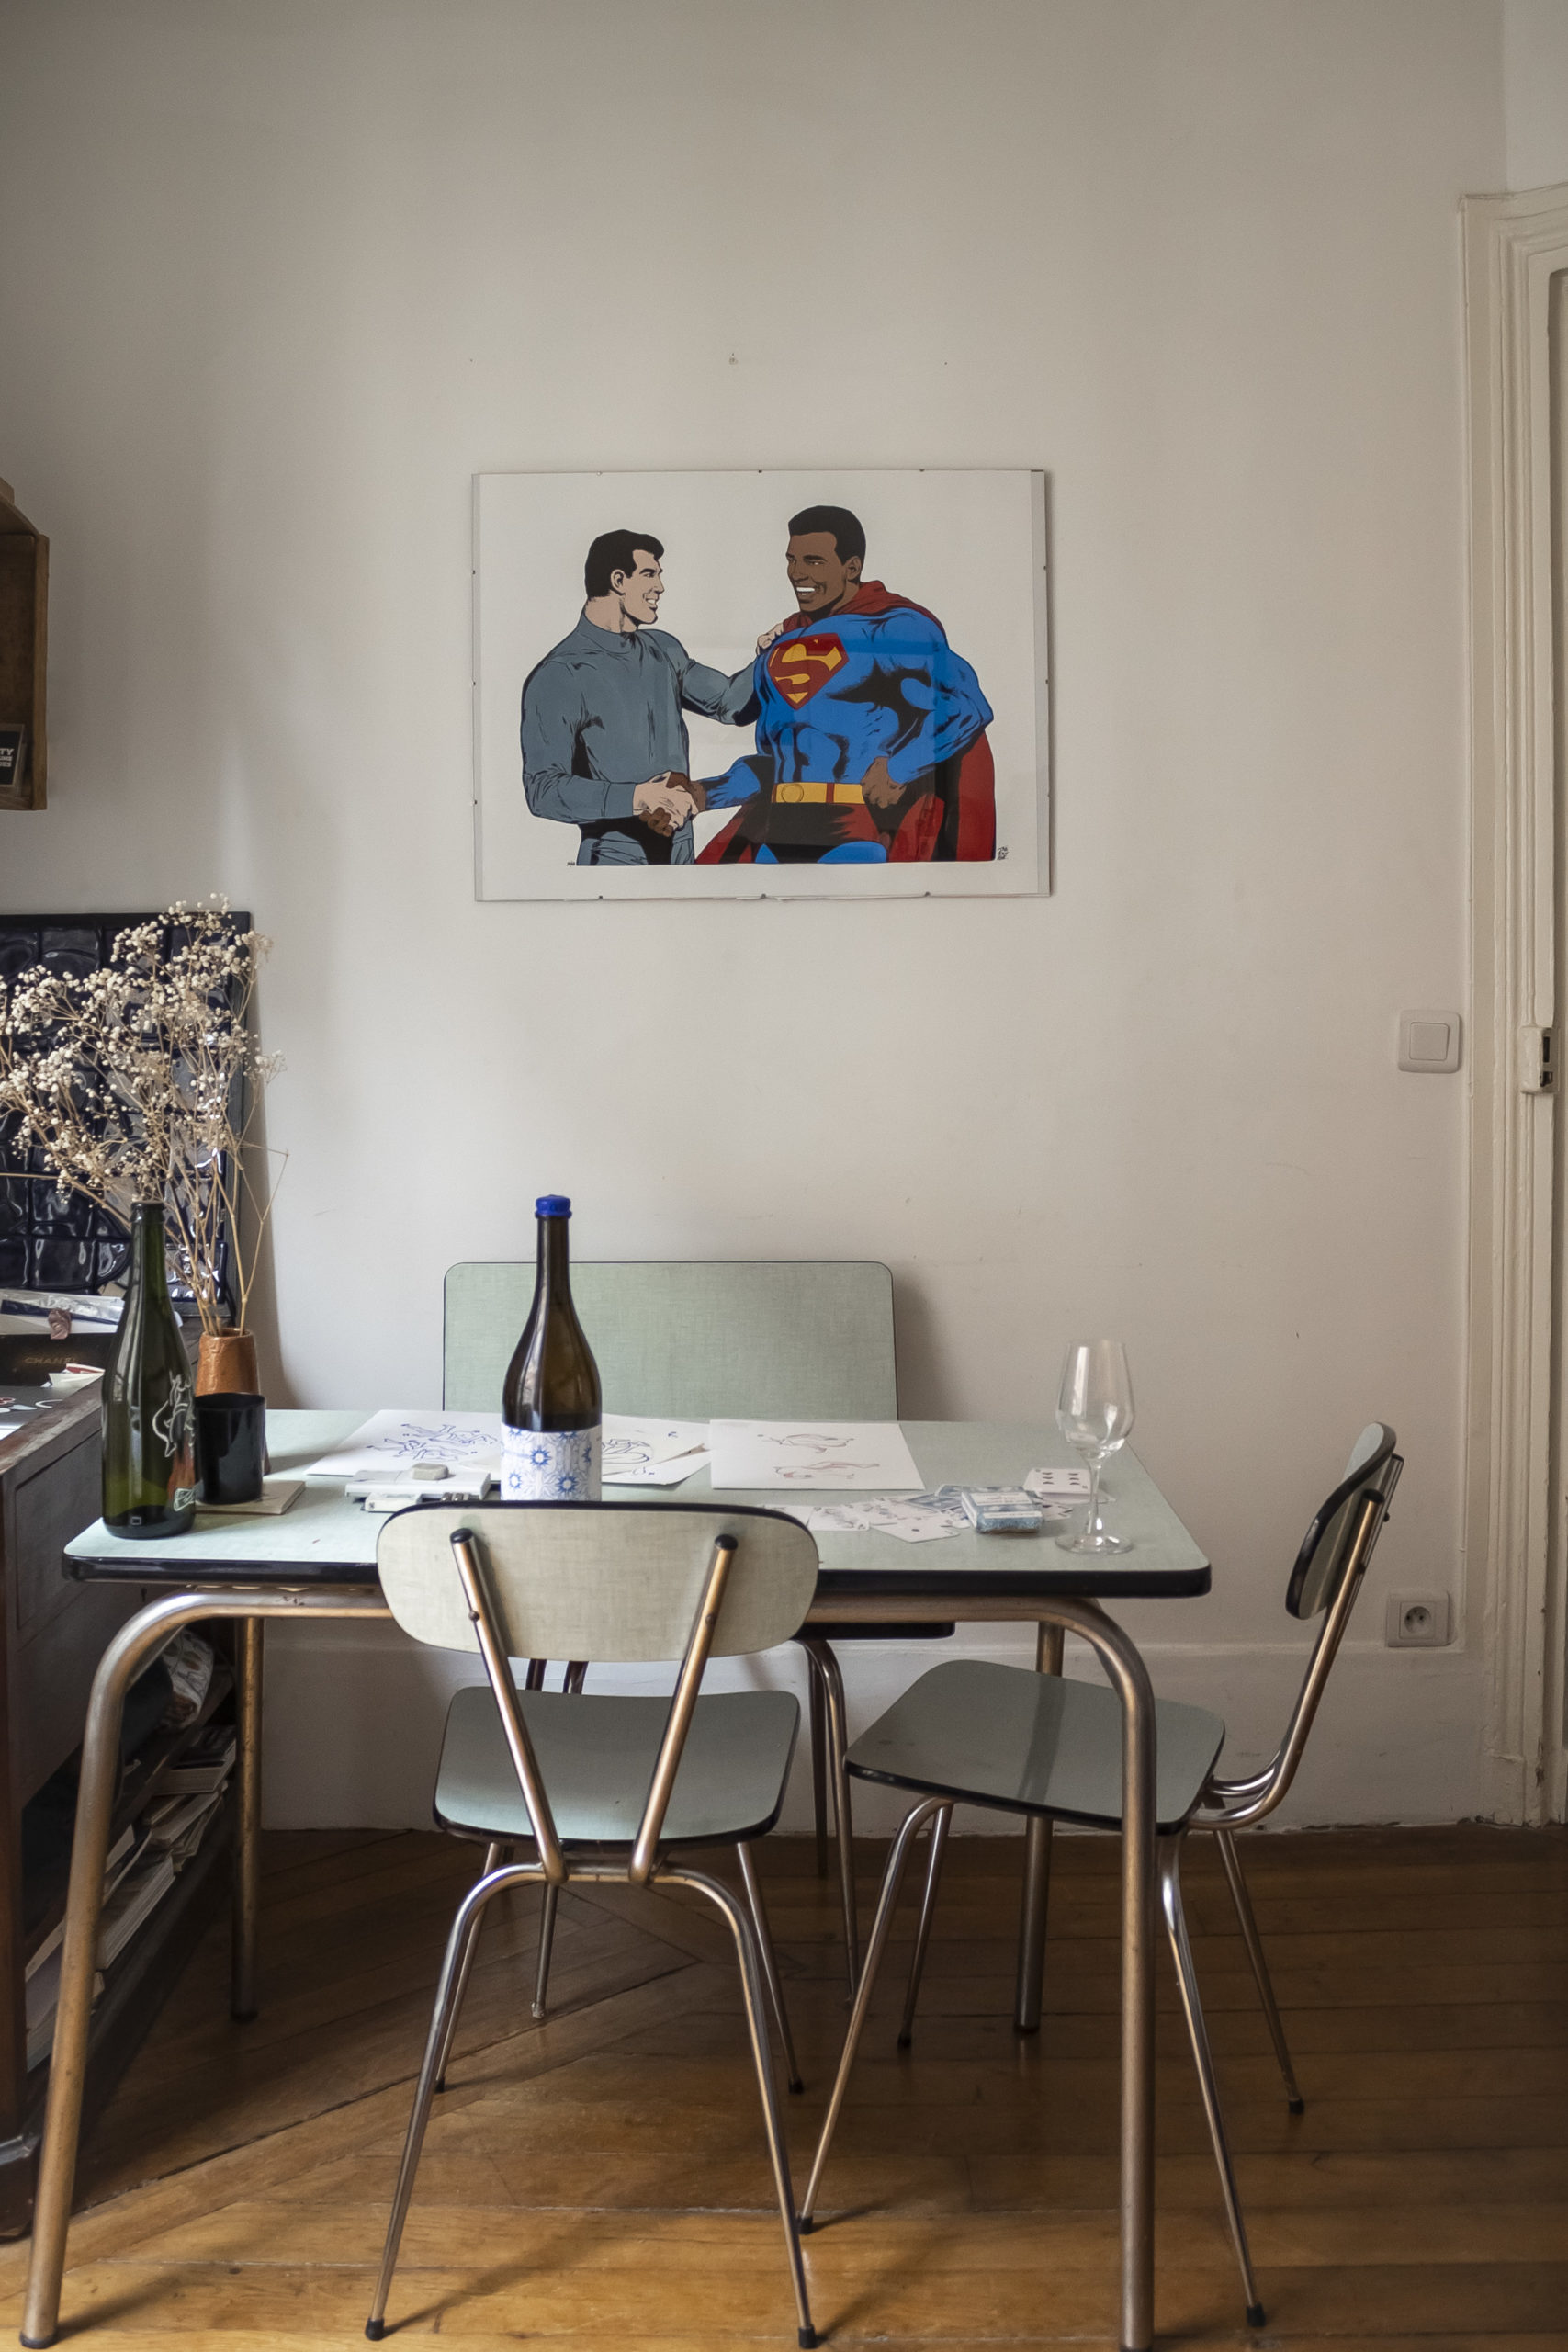 Vue de la table en formica bleu de Karla Sutra positionnée sour un cadre représentant un superman noir. Sur la table sont posés des dessins, une bouteille de vin et des verres